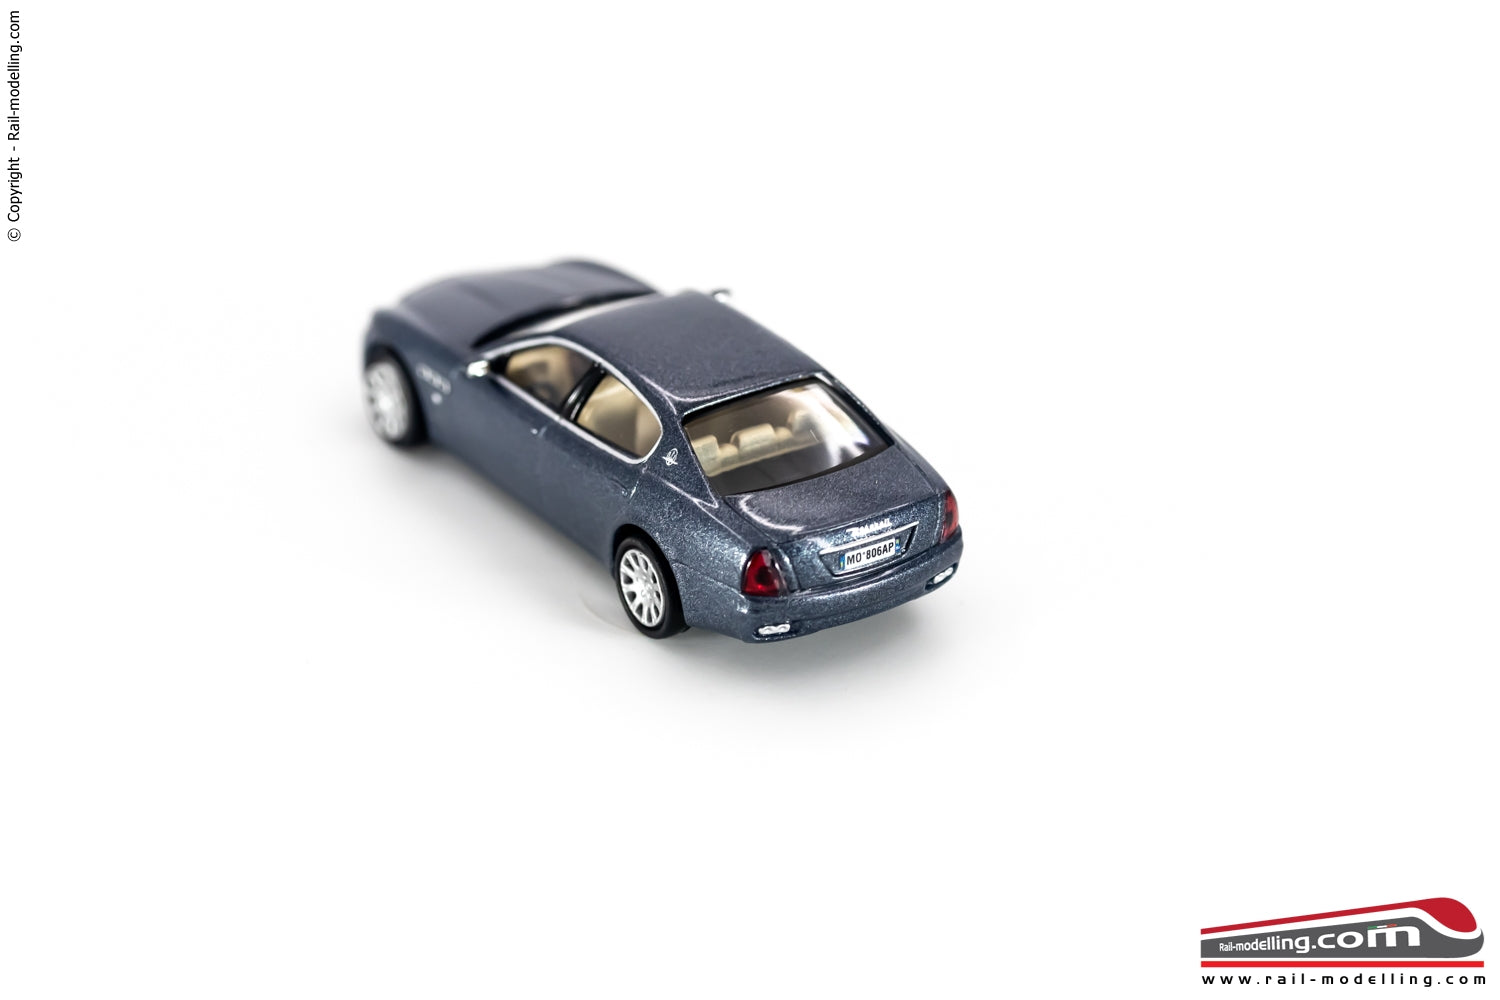 RICKO 38306 - H0 187 - Maserati Quattroporte blu metallizzato Auto modellino